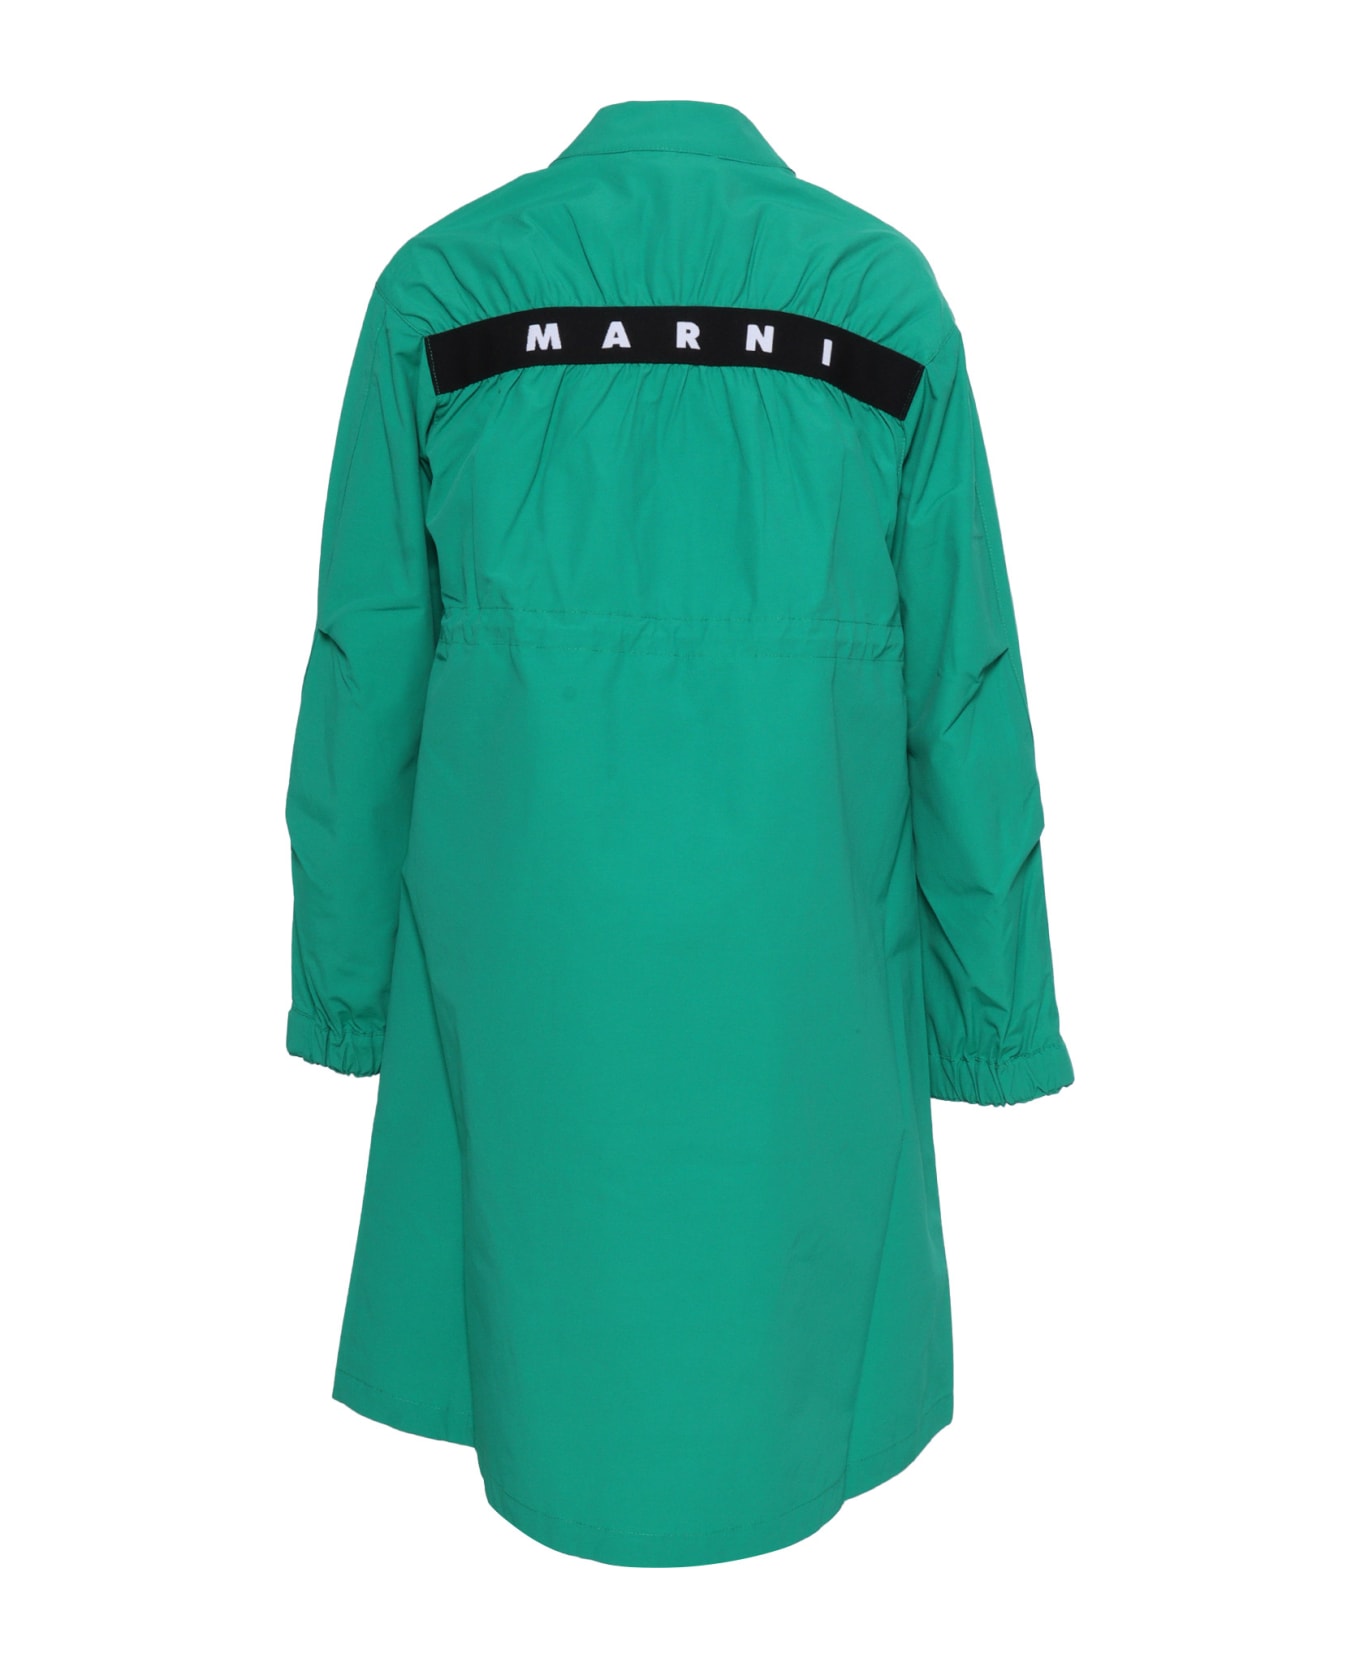 Marni Long Green Jacket - GREEN